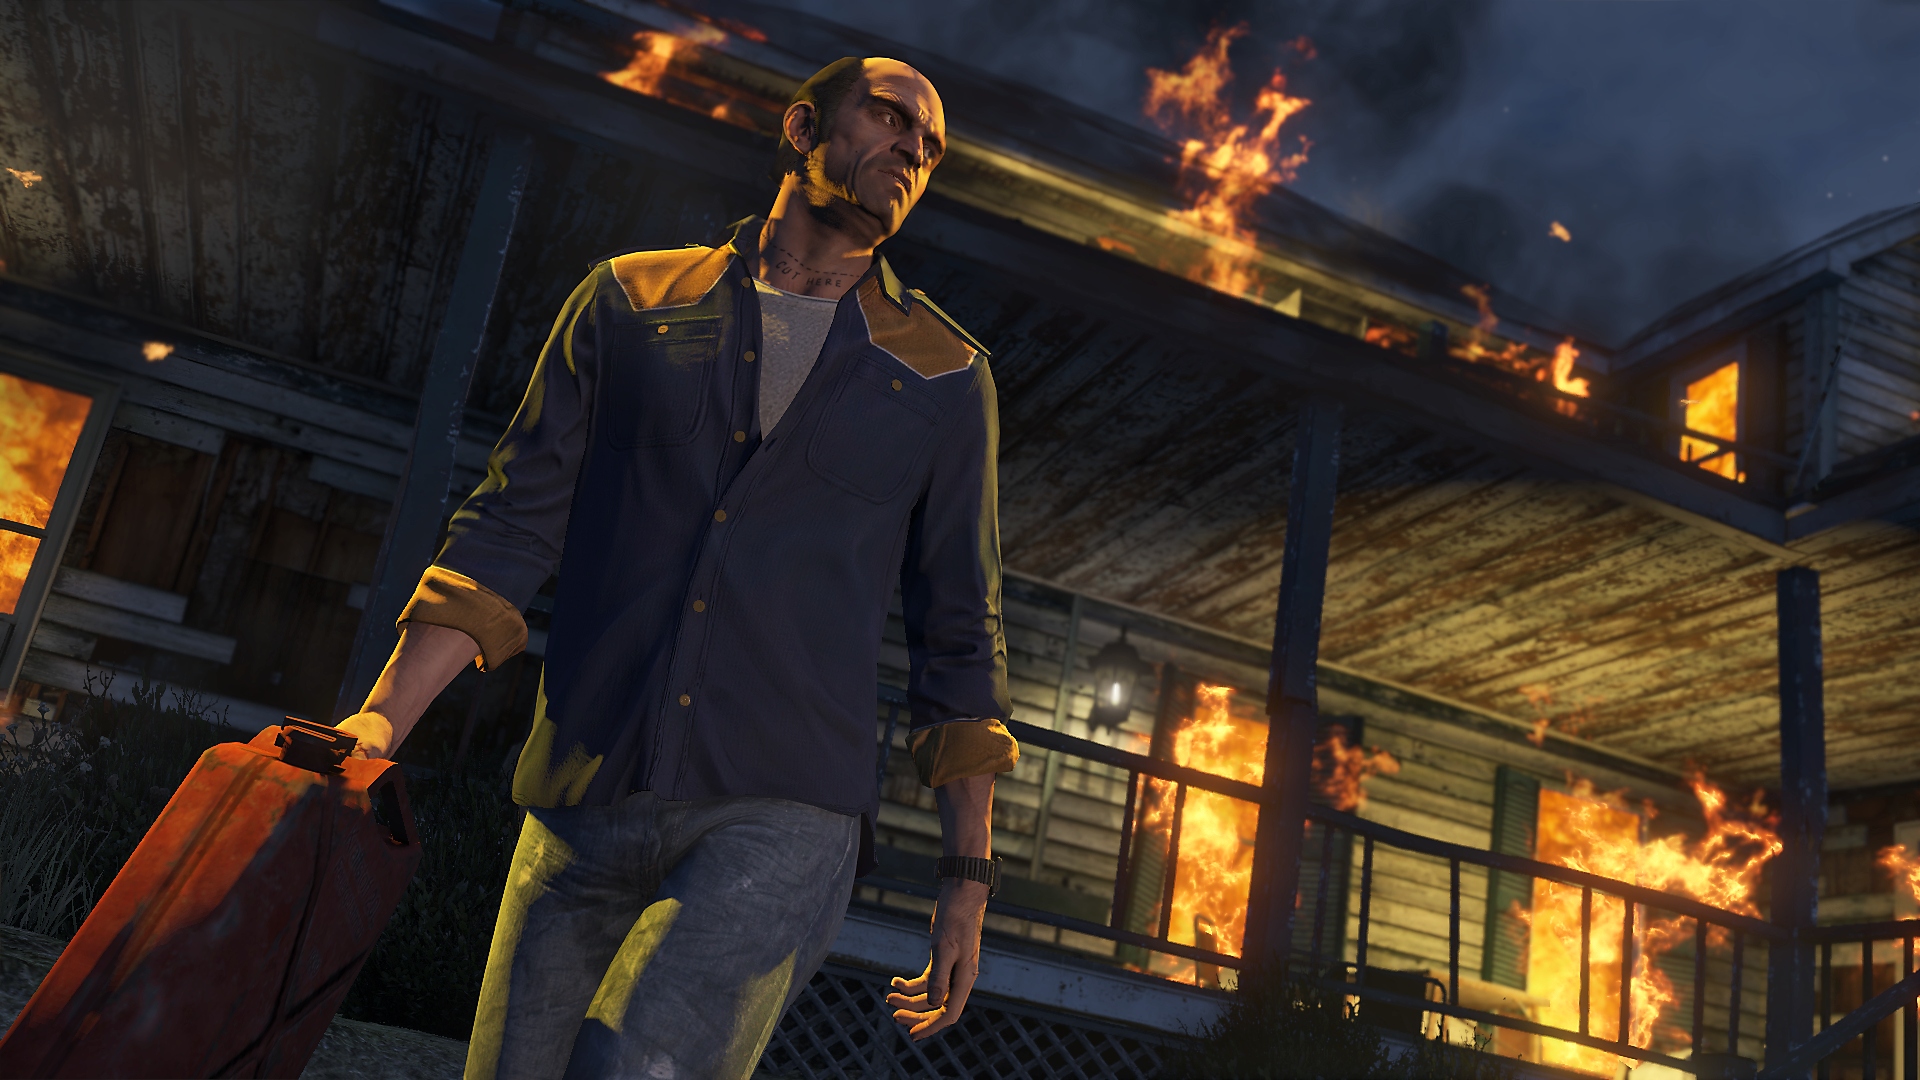 Grand Theft Auto V – zrzut ekranu przedstawiający główną postać, Trevora, odchodzącego od płonącego budynku z kanistrem benzyny w ręce